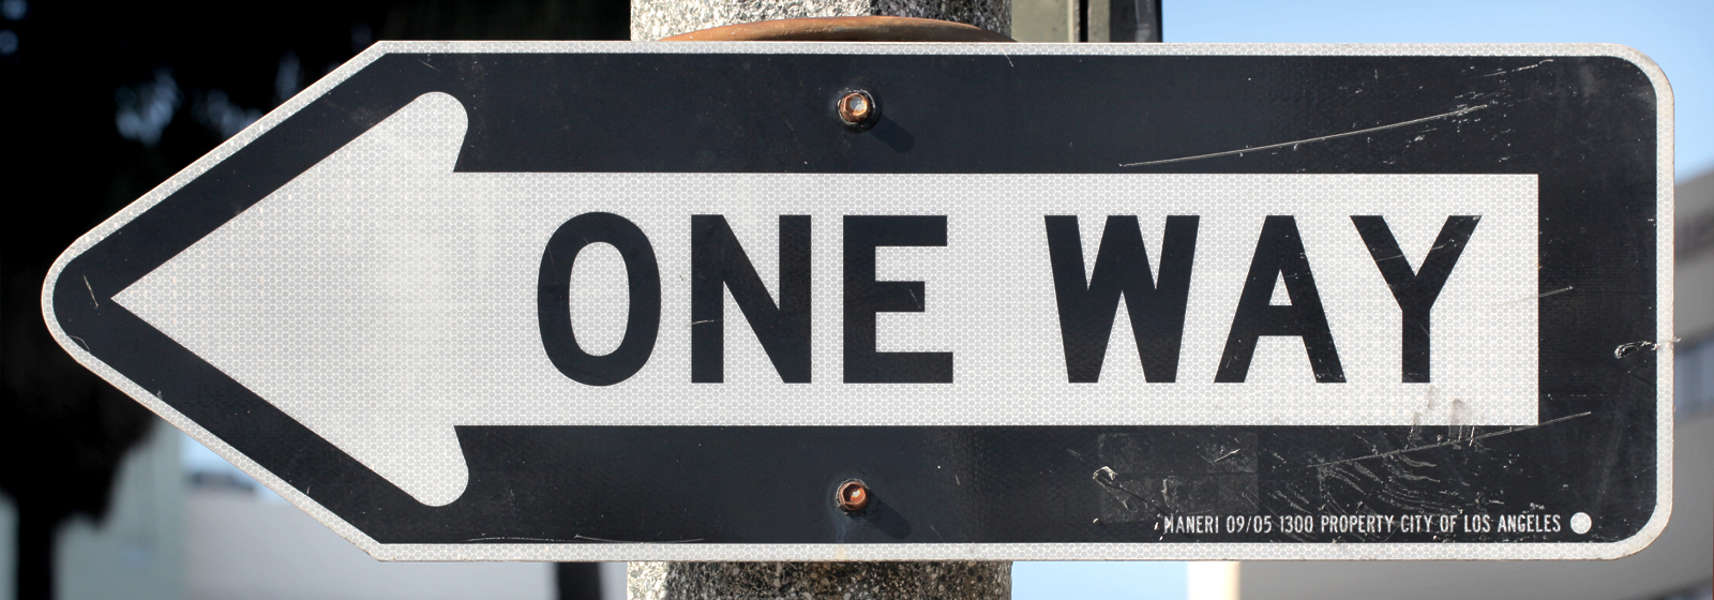 Way sign. One way знак дорожный. One way USA знак. Текстура дорожной таблички. Текстуры дорожных знаков Америки.